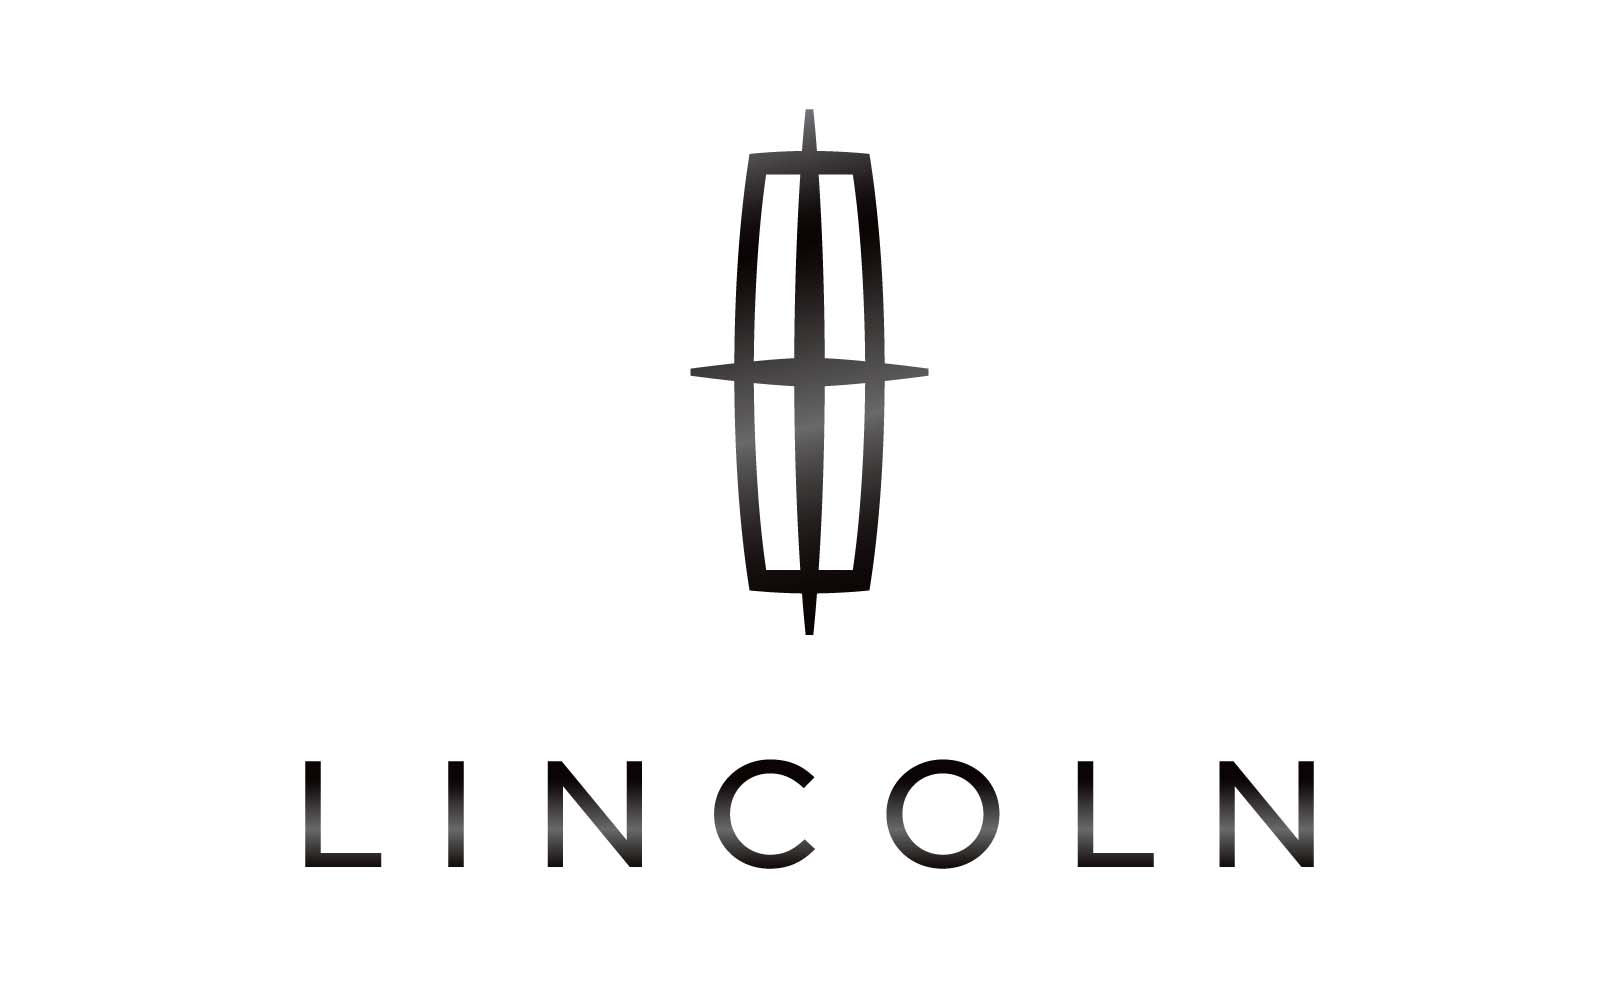 Floor Mats Lincoln Logo Font Png Wallpaper